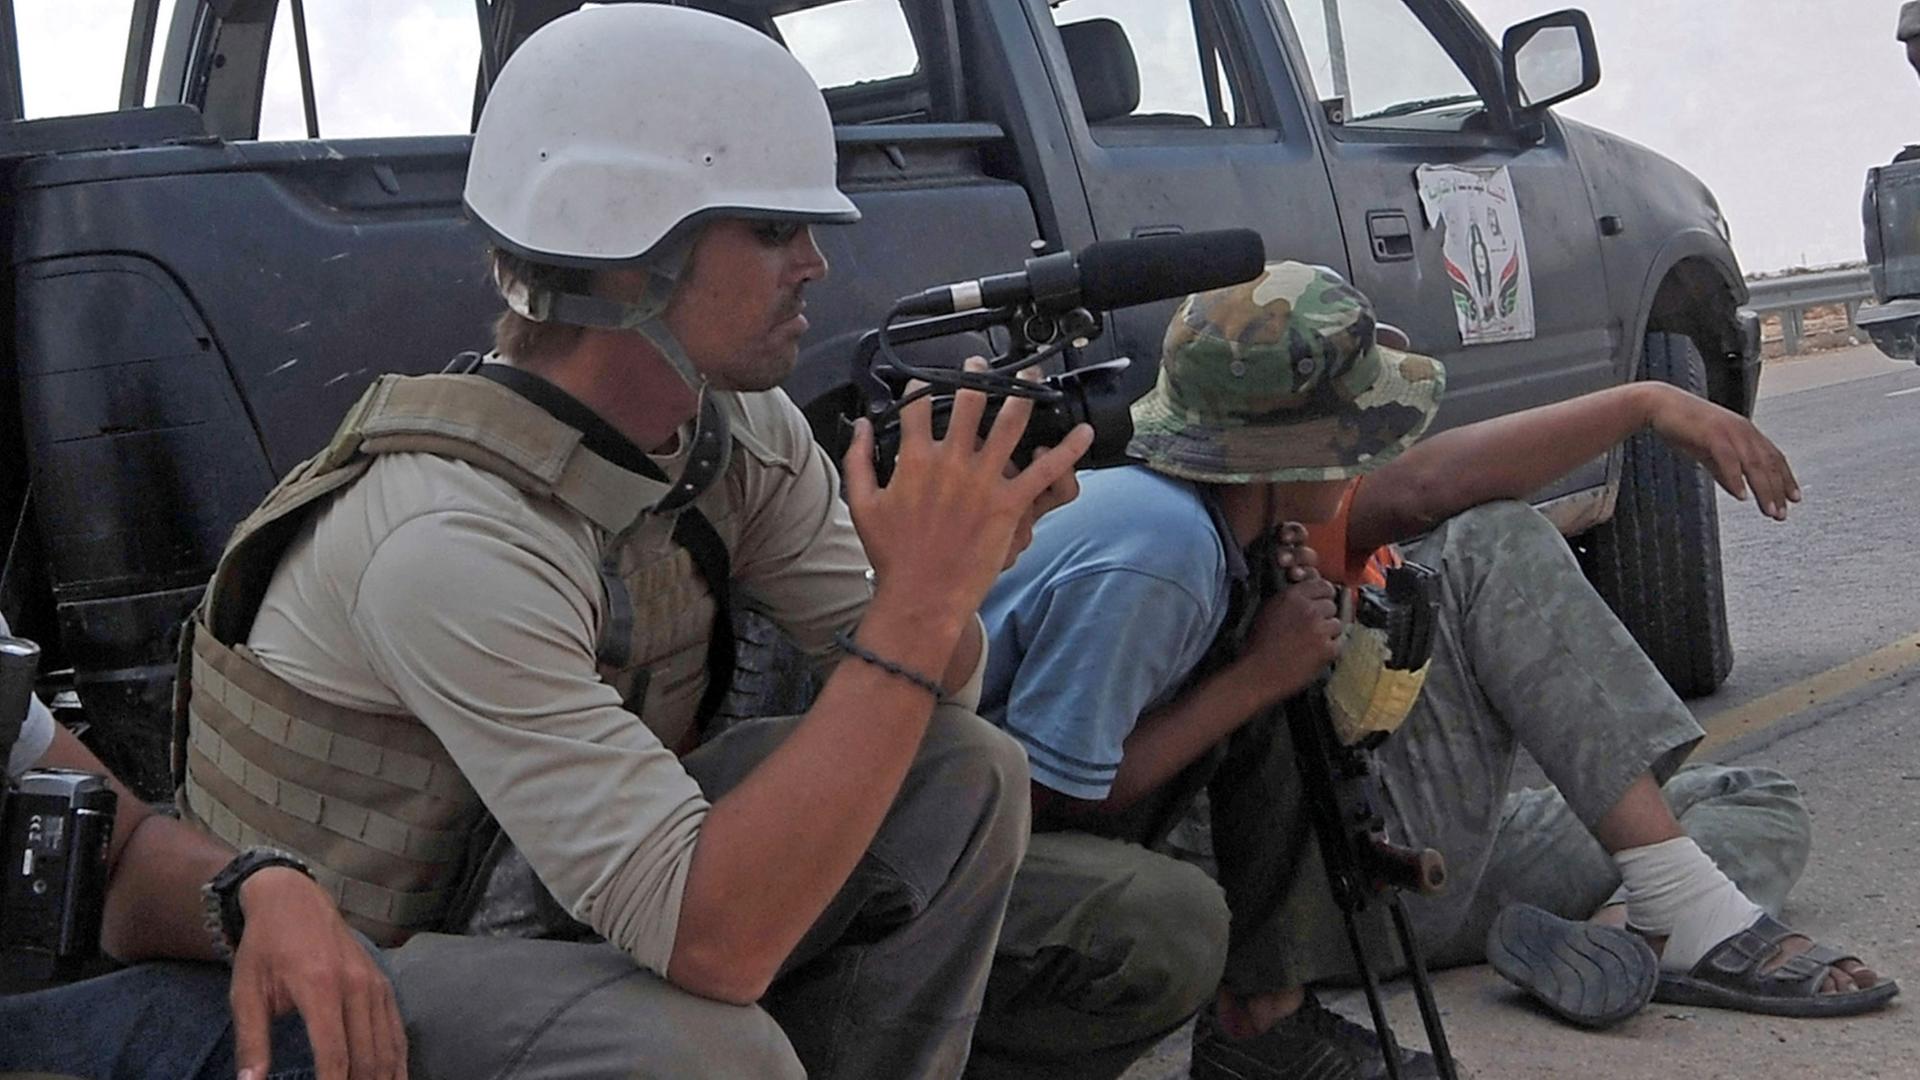 US-Journalist James Foley berichtete oft aus Krisengebieten, wie hier in Libyen - jetzt ist er im Irak offenbar von islamischen Terroristen getötet worden.